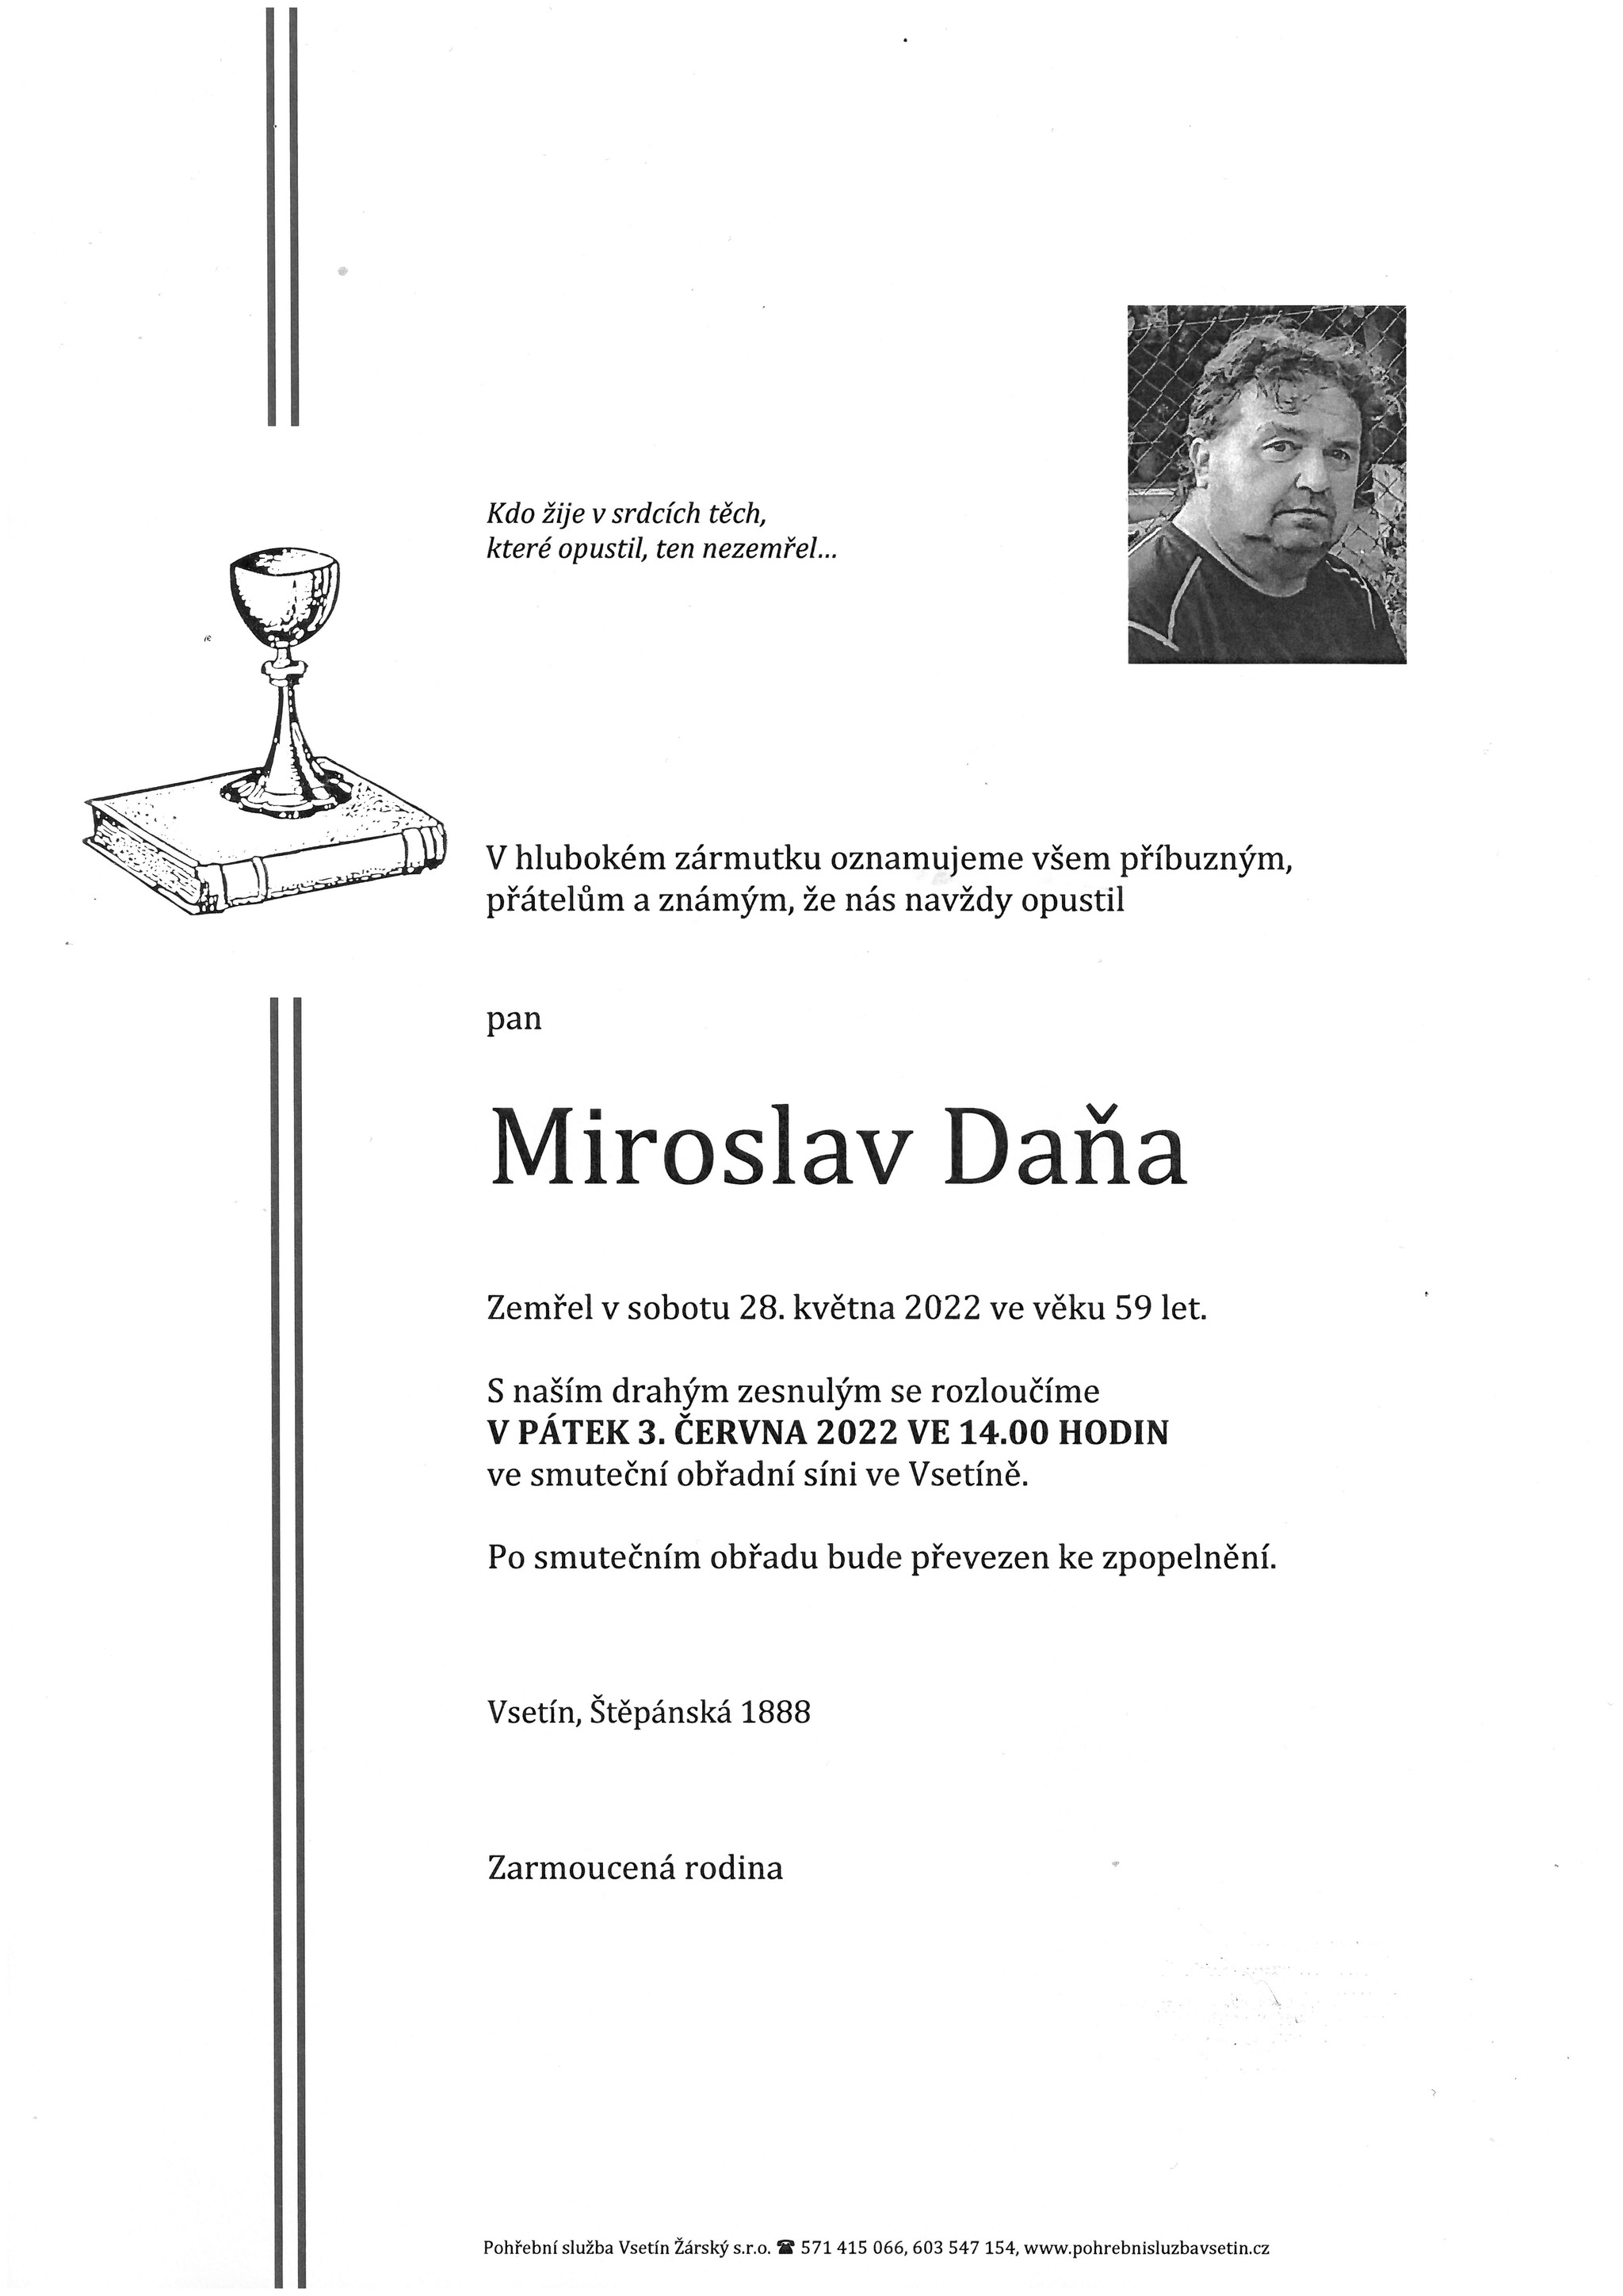 Miroslav Daňa